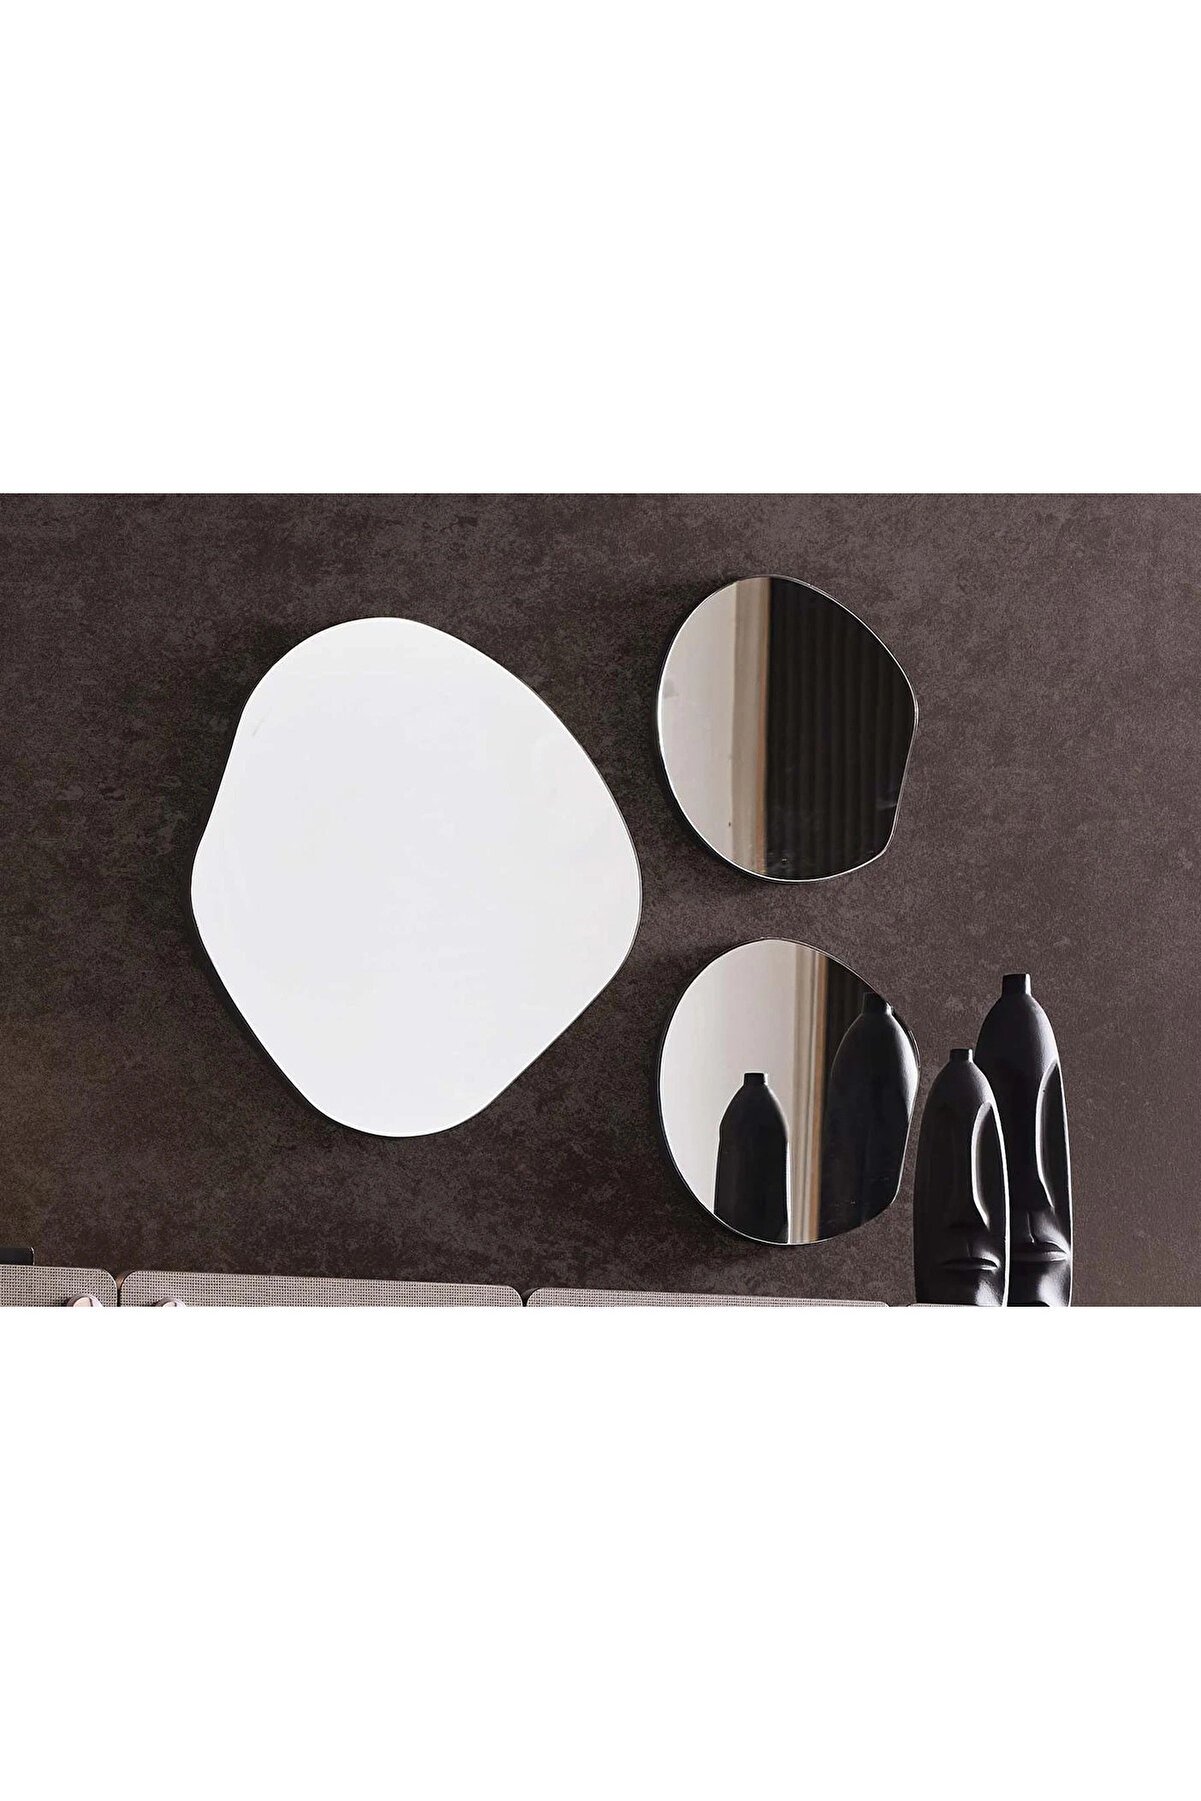 MKS Asimetrik Ayna Seti / Konsol Aynası / Salon Aynası / Düzensiz Ayna / Ayna Dekoru